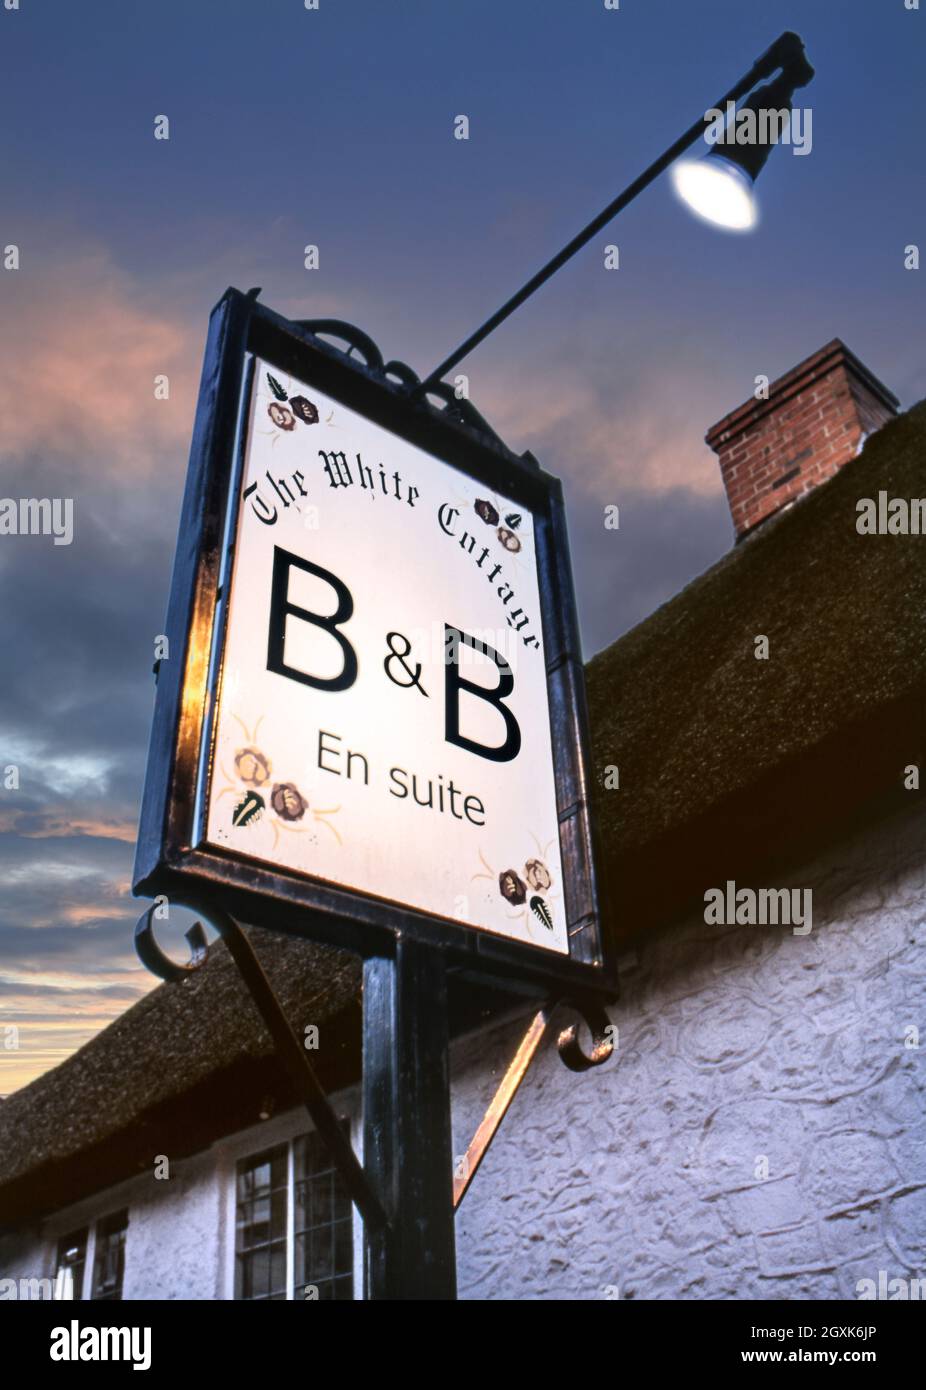 B&B affiche éclairée au coucher du soleil à l'extérieur d'un charmant cottage en chaume typique offrant Bed & Breakfast en suite au White Cottage à Devon, Royaume-Uni anglais britannique Banque D'Images